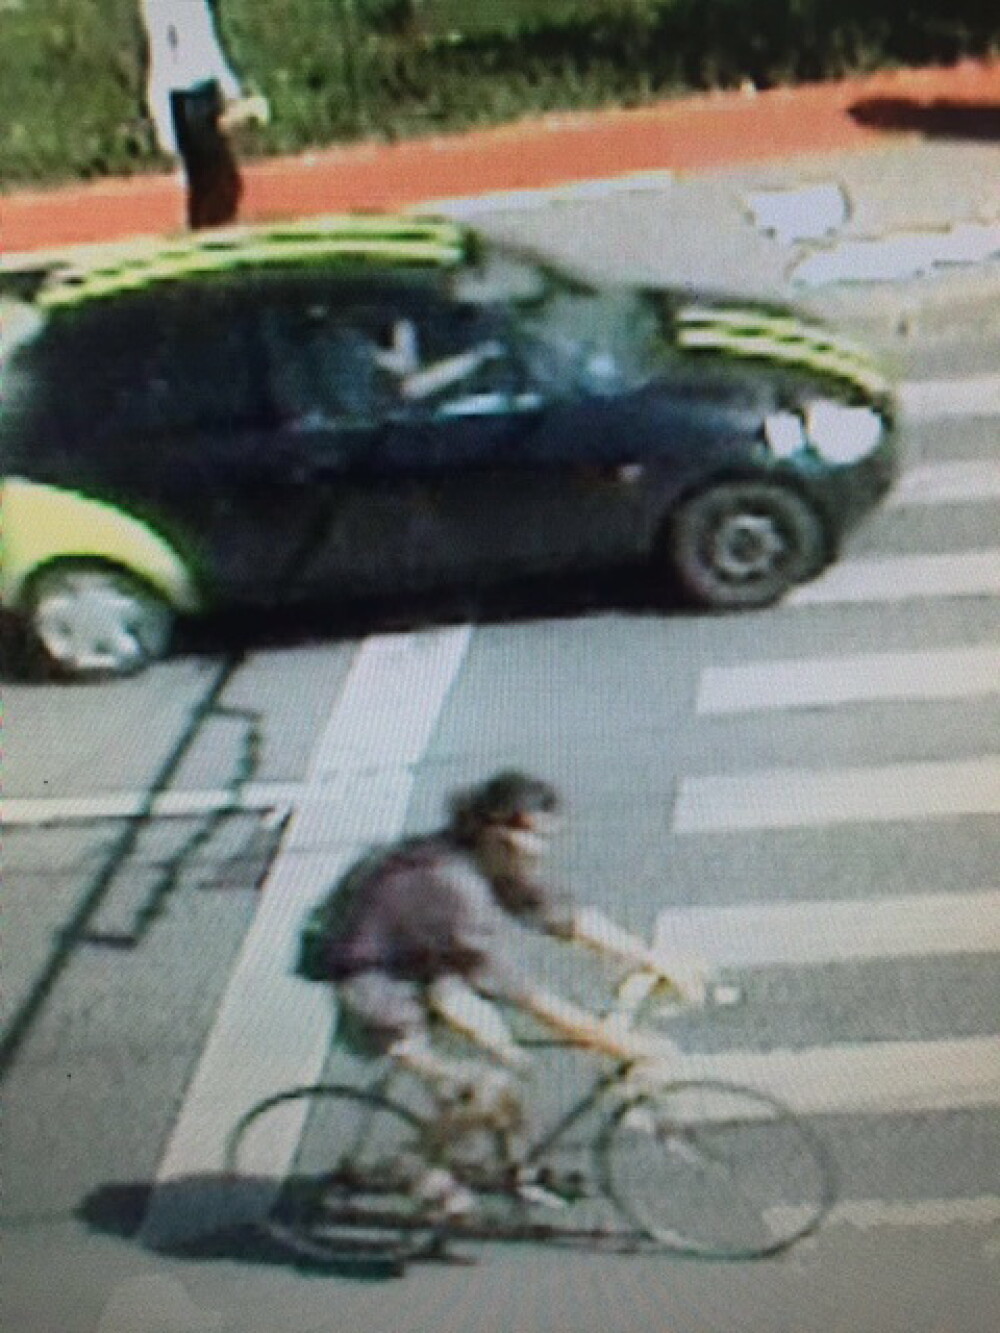 Politistii din Cluj cauta un biciclist care a lovit grav o femeie pe trecerea de pietoni si a fugit - Imaginea 2